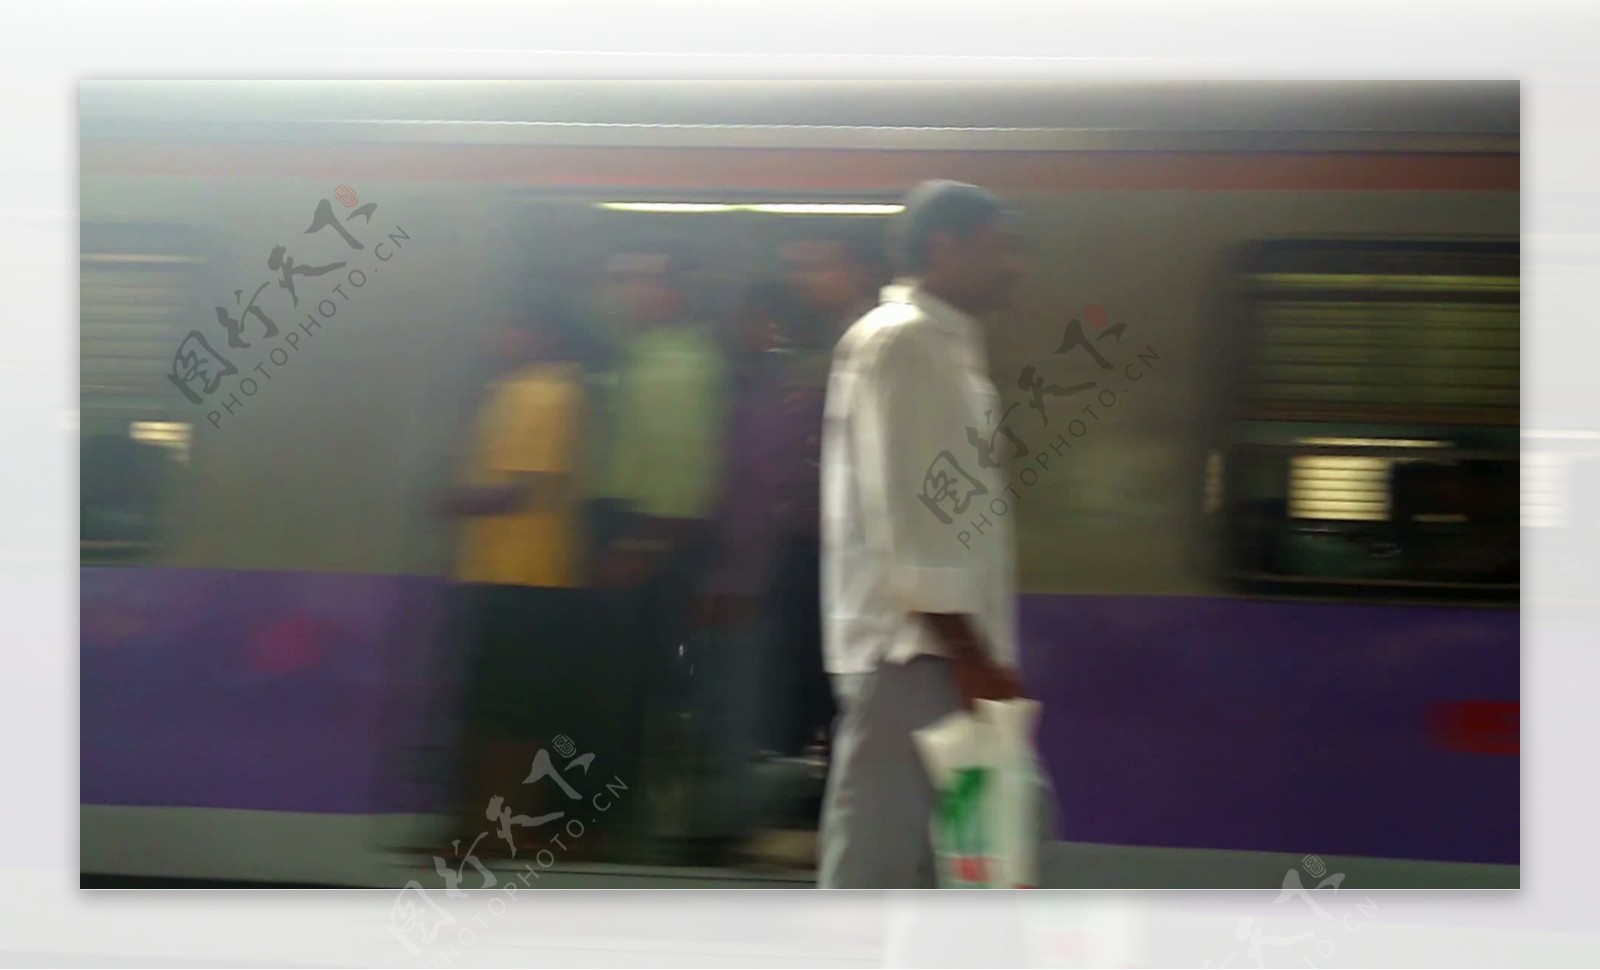 孟买印度火车站